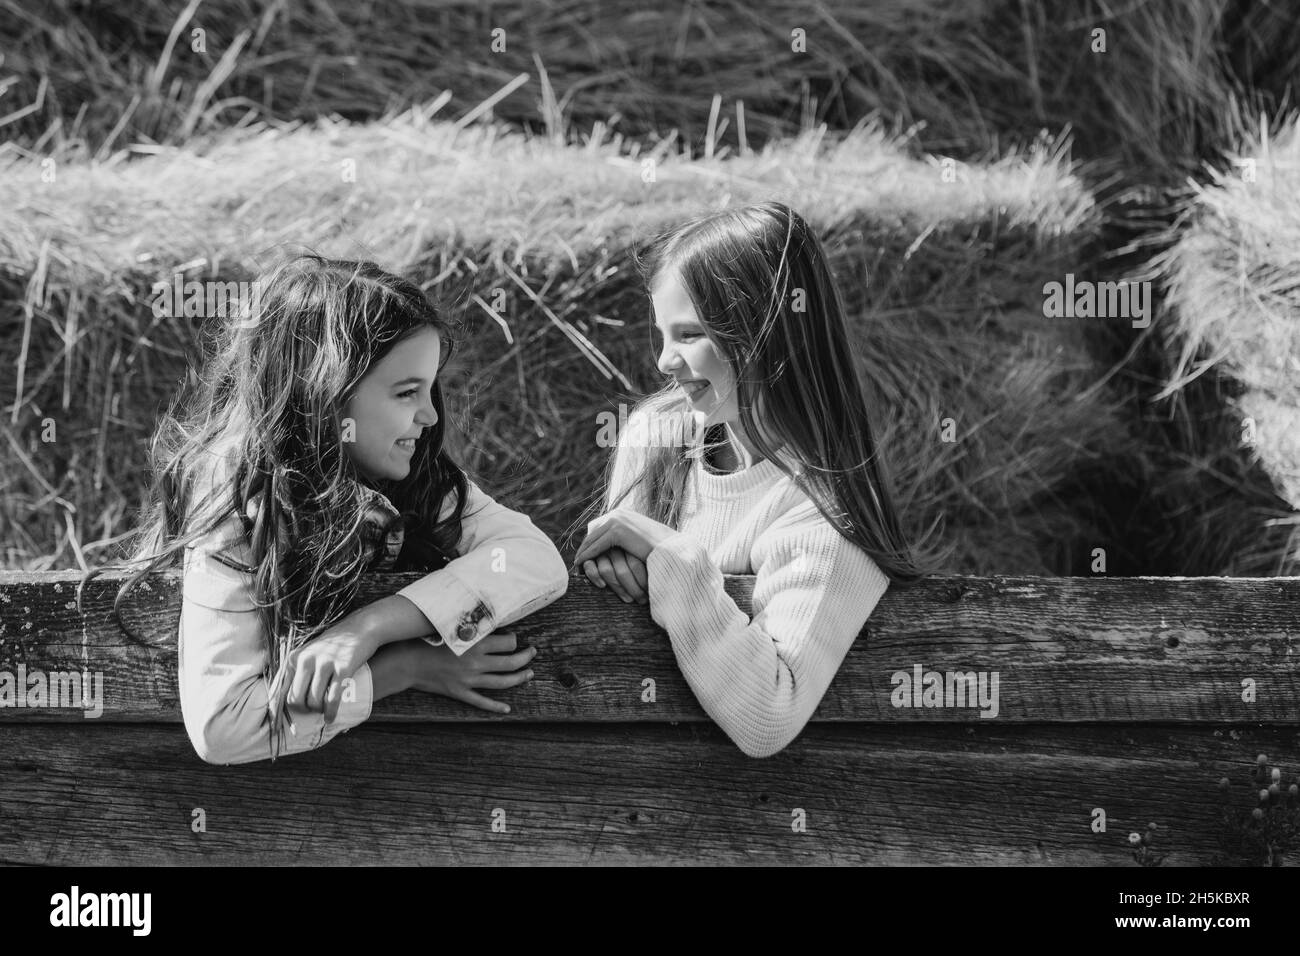 Schwarz-weißes Bild von zwei jungen Schwestern, die sich gegenseitig angucken, während sie sich auf einer Holzschiene mit Heuballen im Hintergrund lehnen Stockfoto